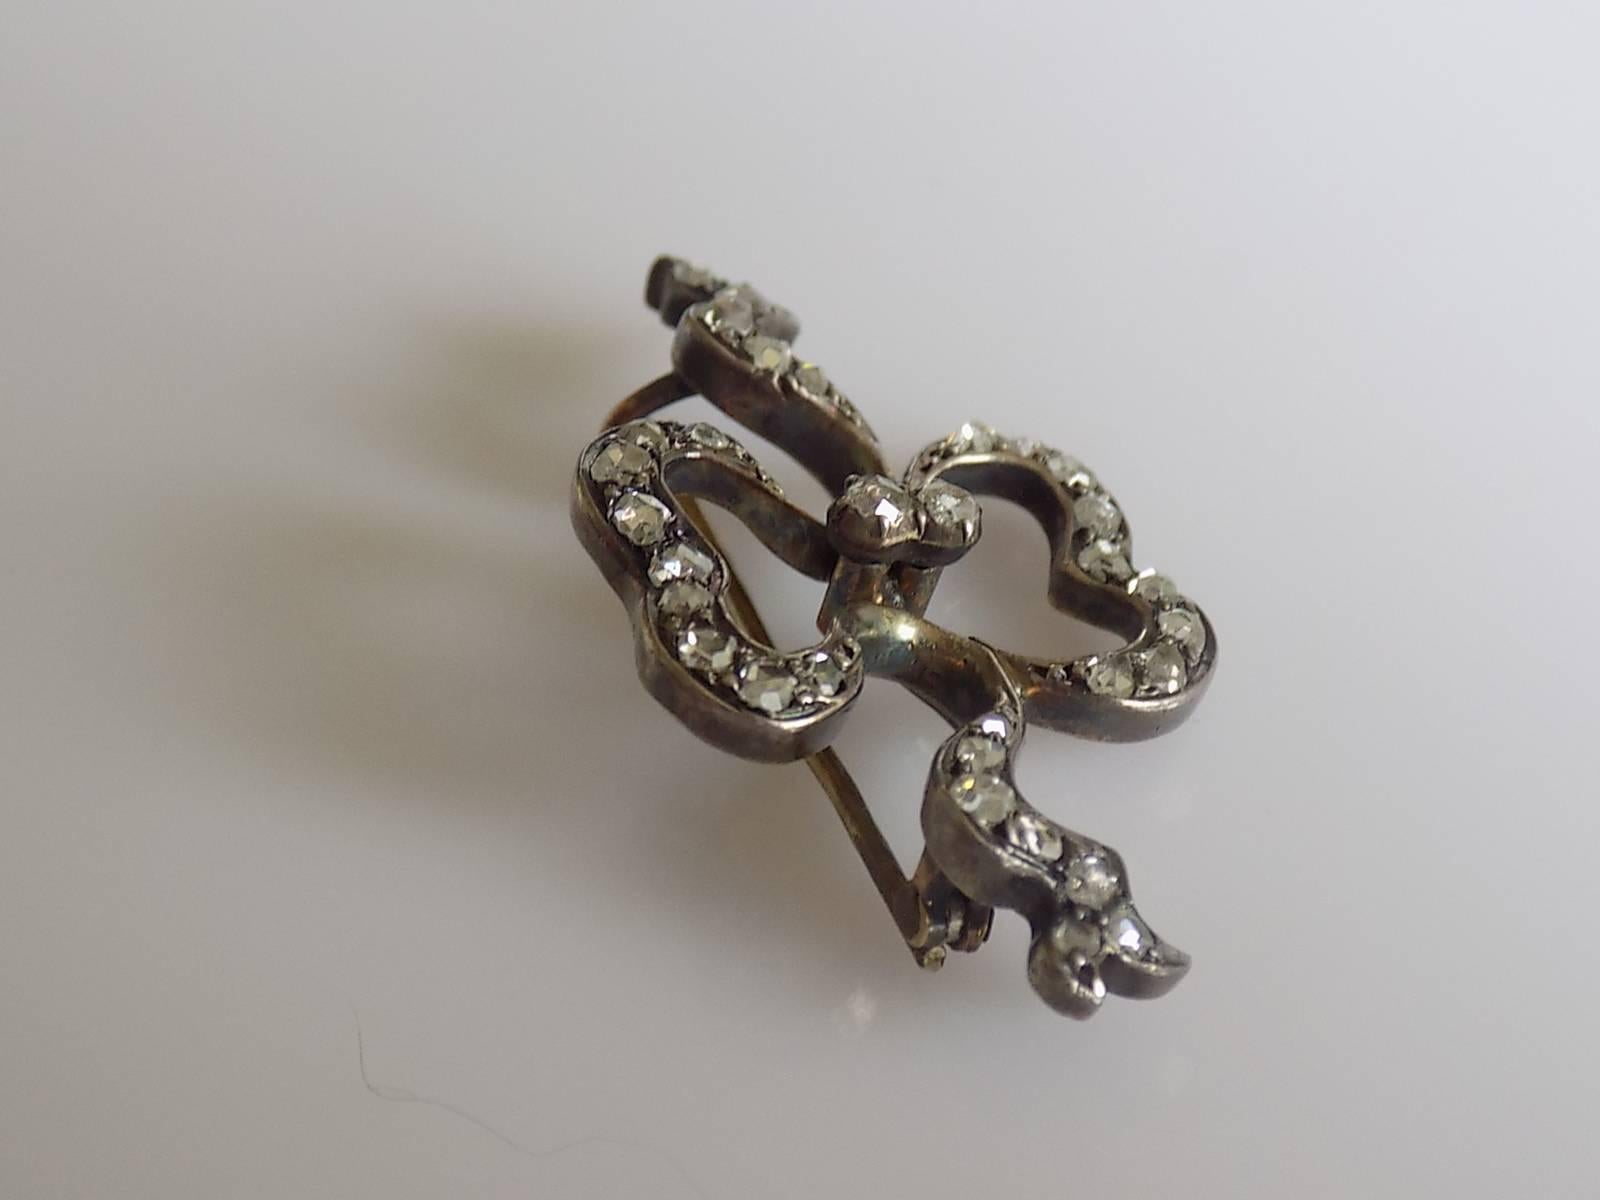 Eine schöne viktorianische c.1890s Rose geschnitten Diamond Bow Brosche. Diamanten in einer Goldfassung mit Silberbesatz. Brosche wird in antiken Box kommen, wie abgebildet.
Länge 38 mm, Höhe 20 mm.
Diamanten von 1,2 mm bis 2,3 mm, insgesamt 34